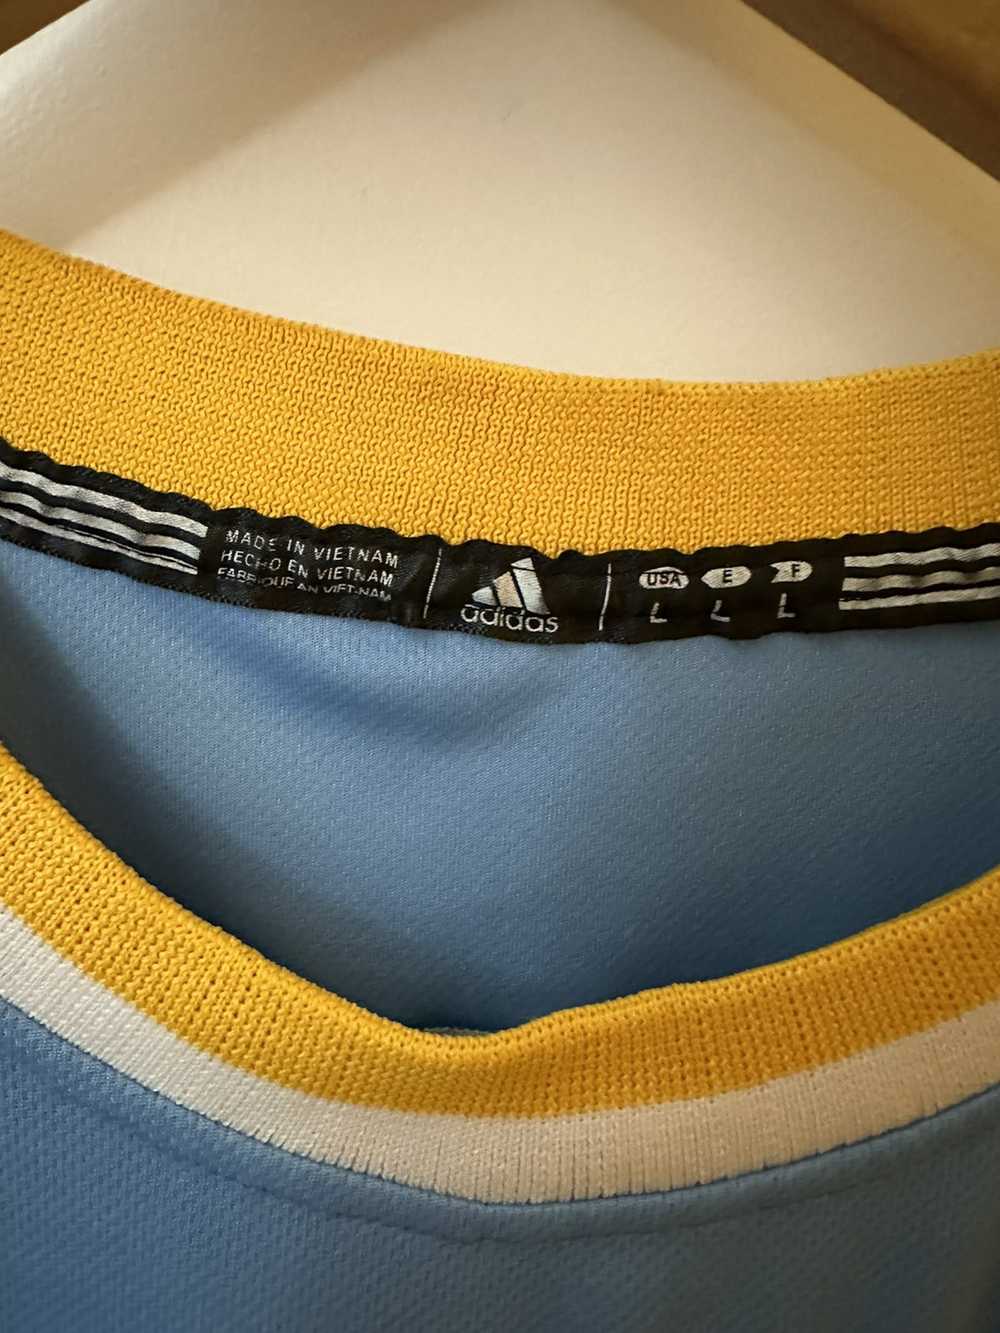 Adidas × Ncaa UCLA Russell Westbrook - image 3